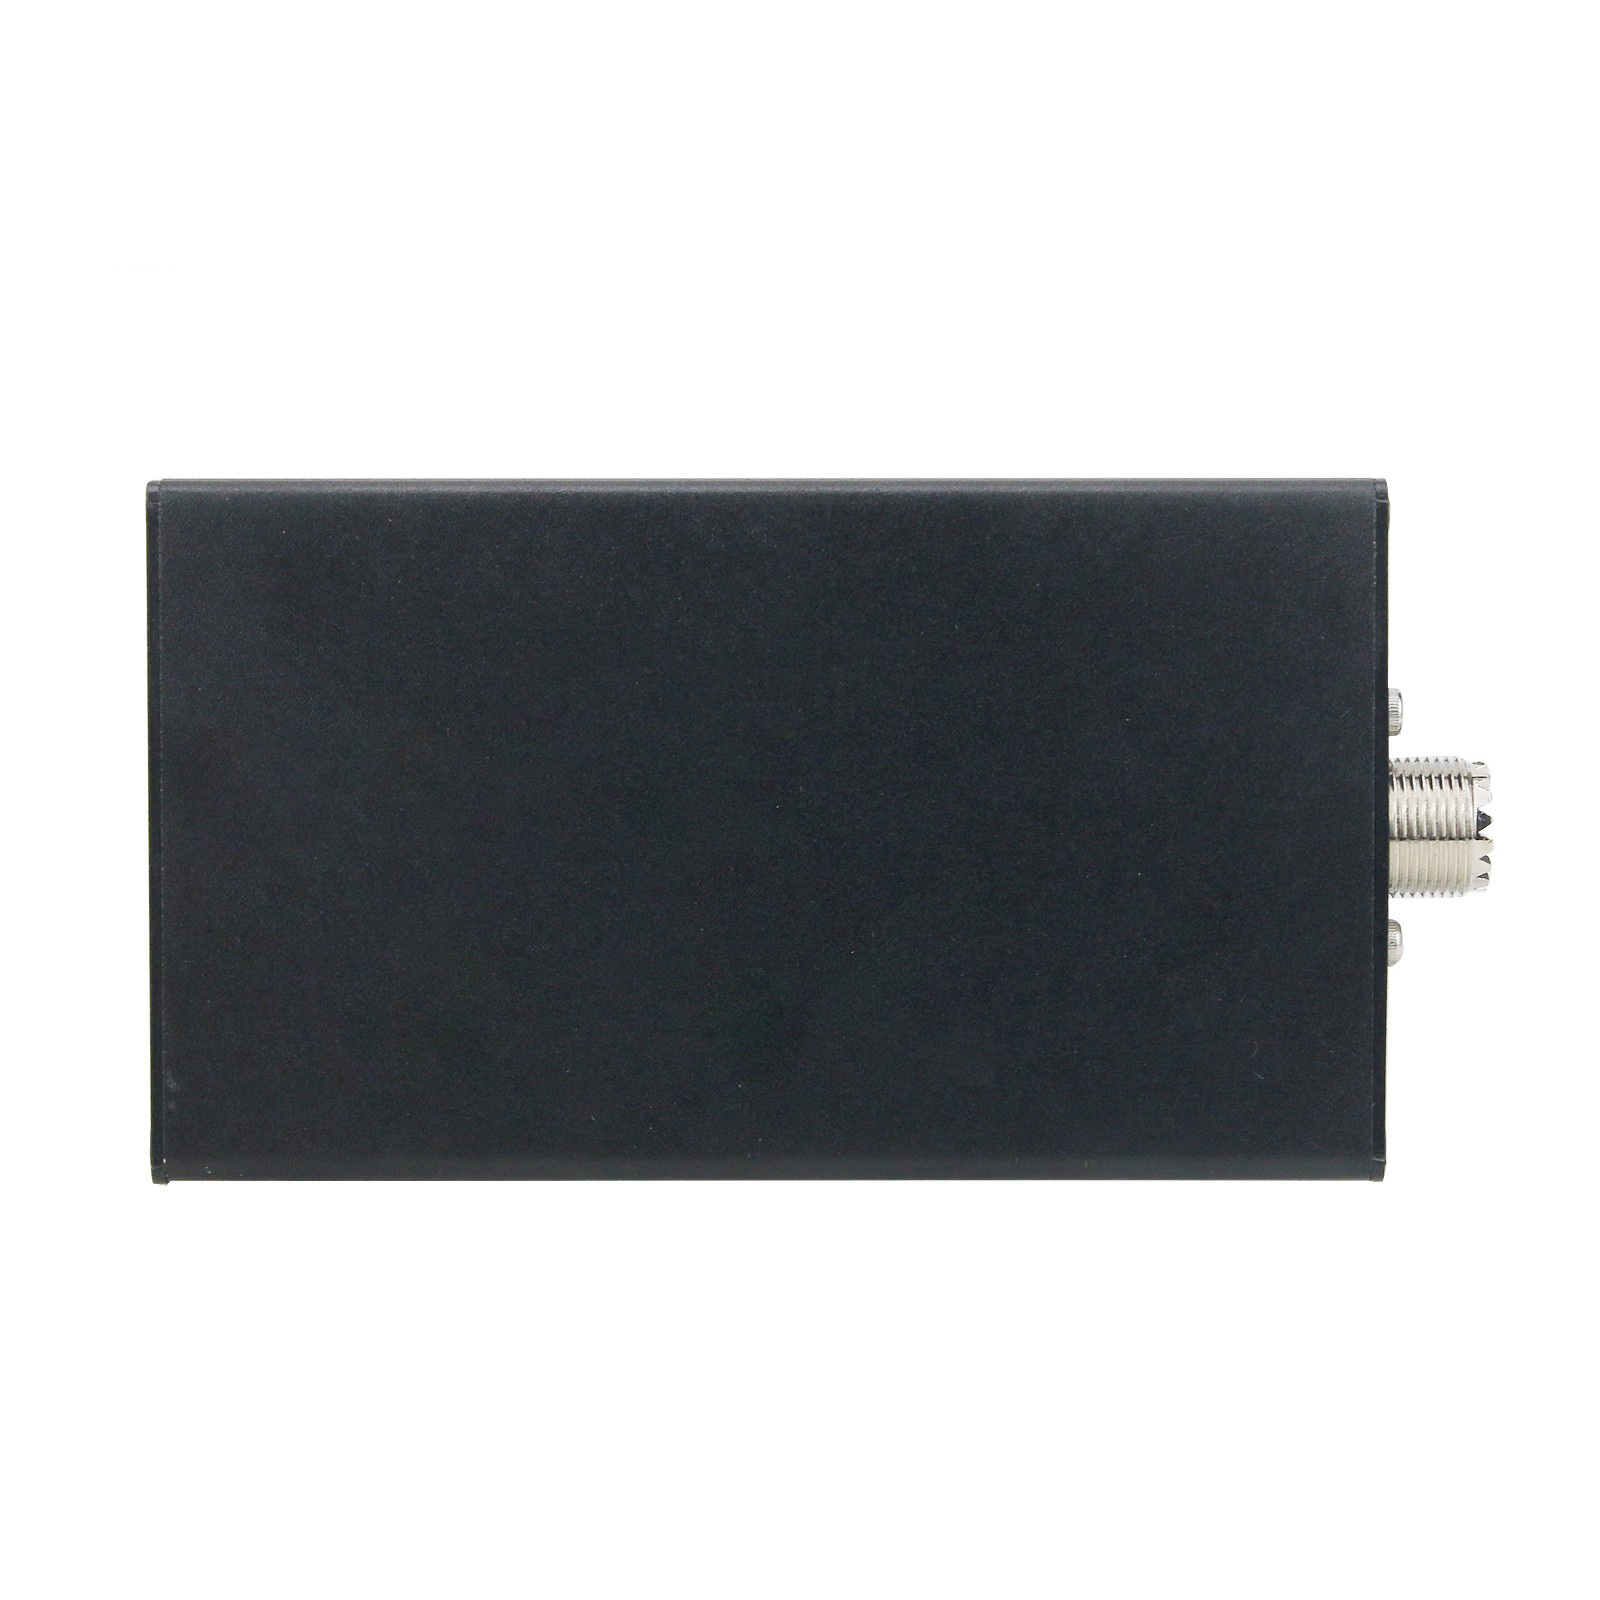 5W-Portable-uSDX-8-Band-SDR-All-Mode-Transceiver-USB-LSB-CW-AM-FM-HF-SSB-QRP-Transceiver-QCX-SSB-wit-1890124-6